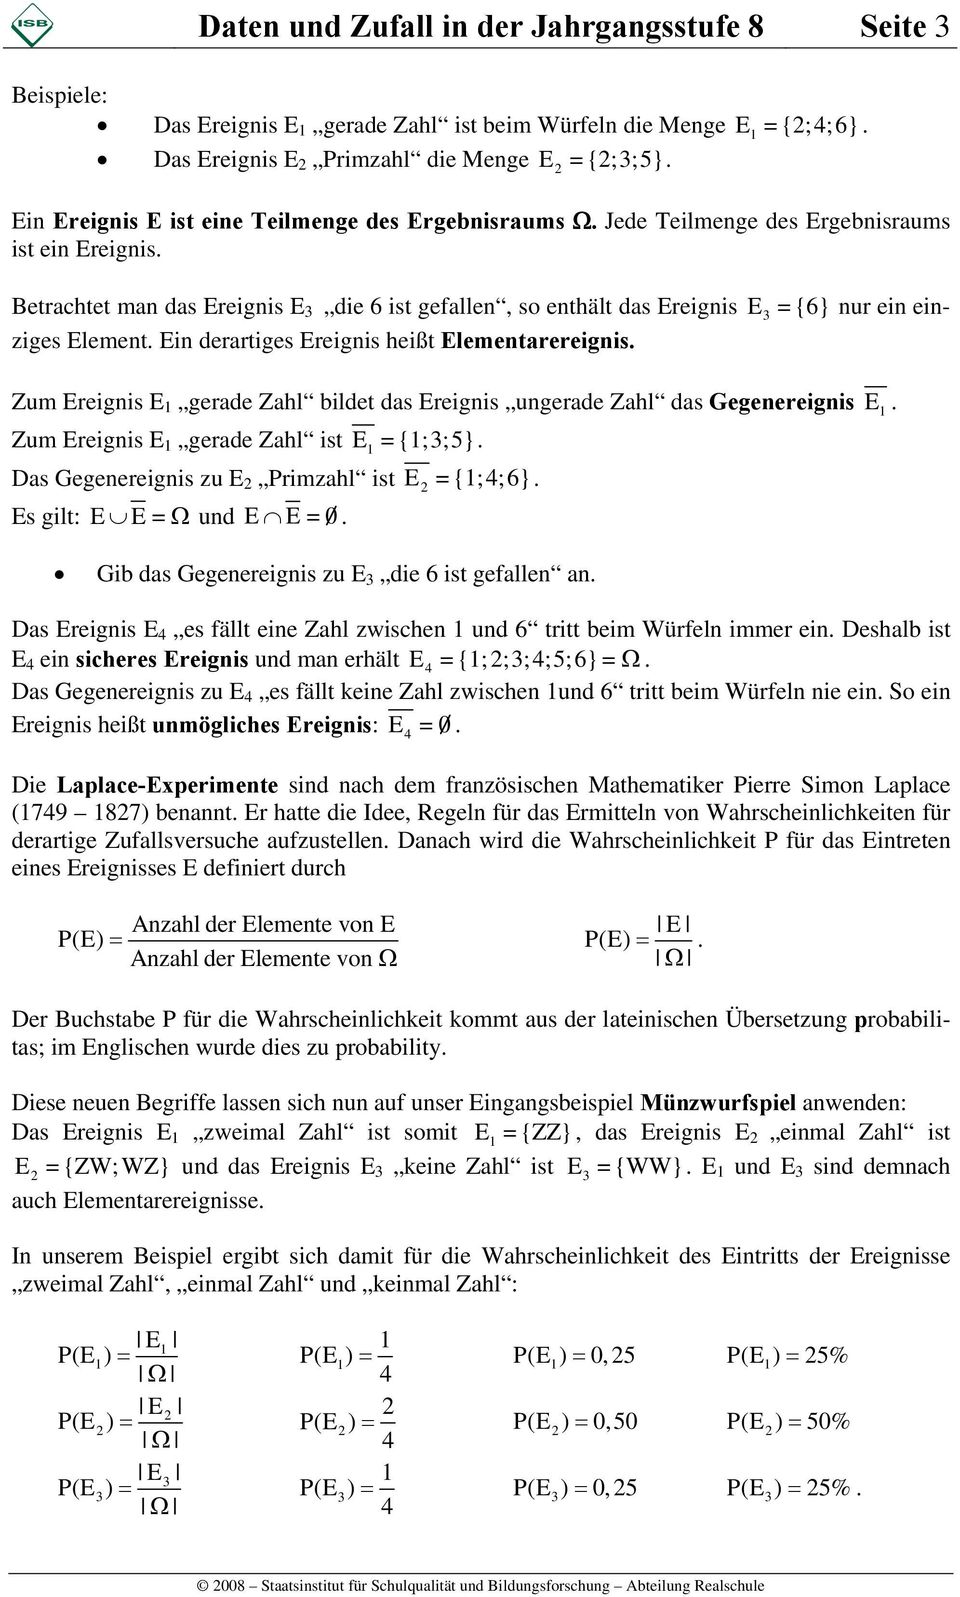 Betrachtet man das Ereignis E die ist gefallen, so enthält das Ereignis E = {} nur ein einziges Element. Ein derartiges Ereignis heißt Elementarereignis.